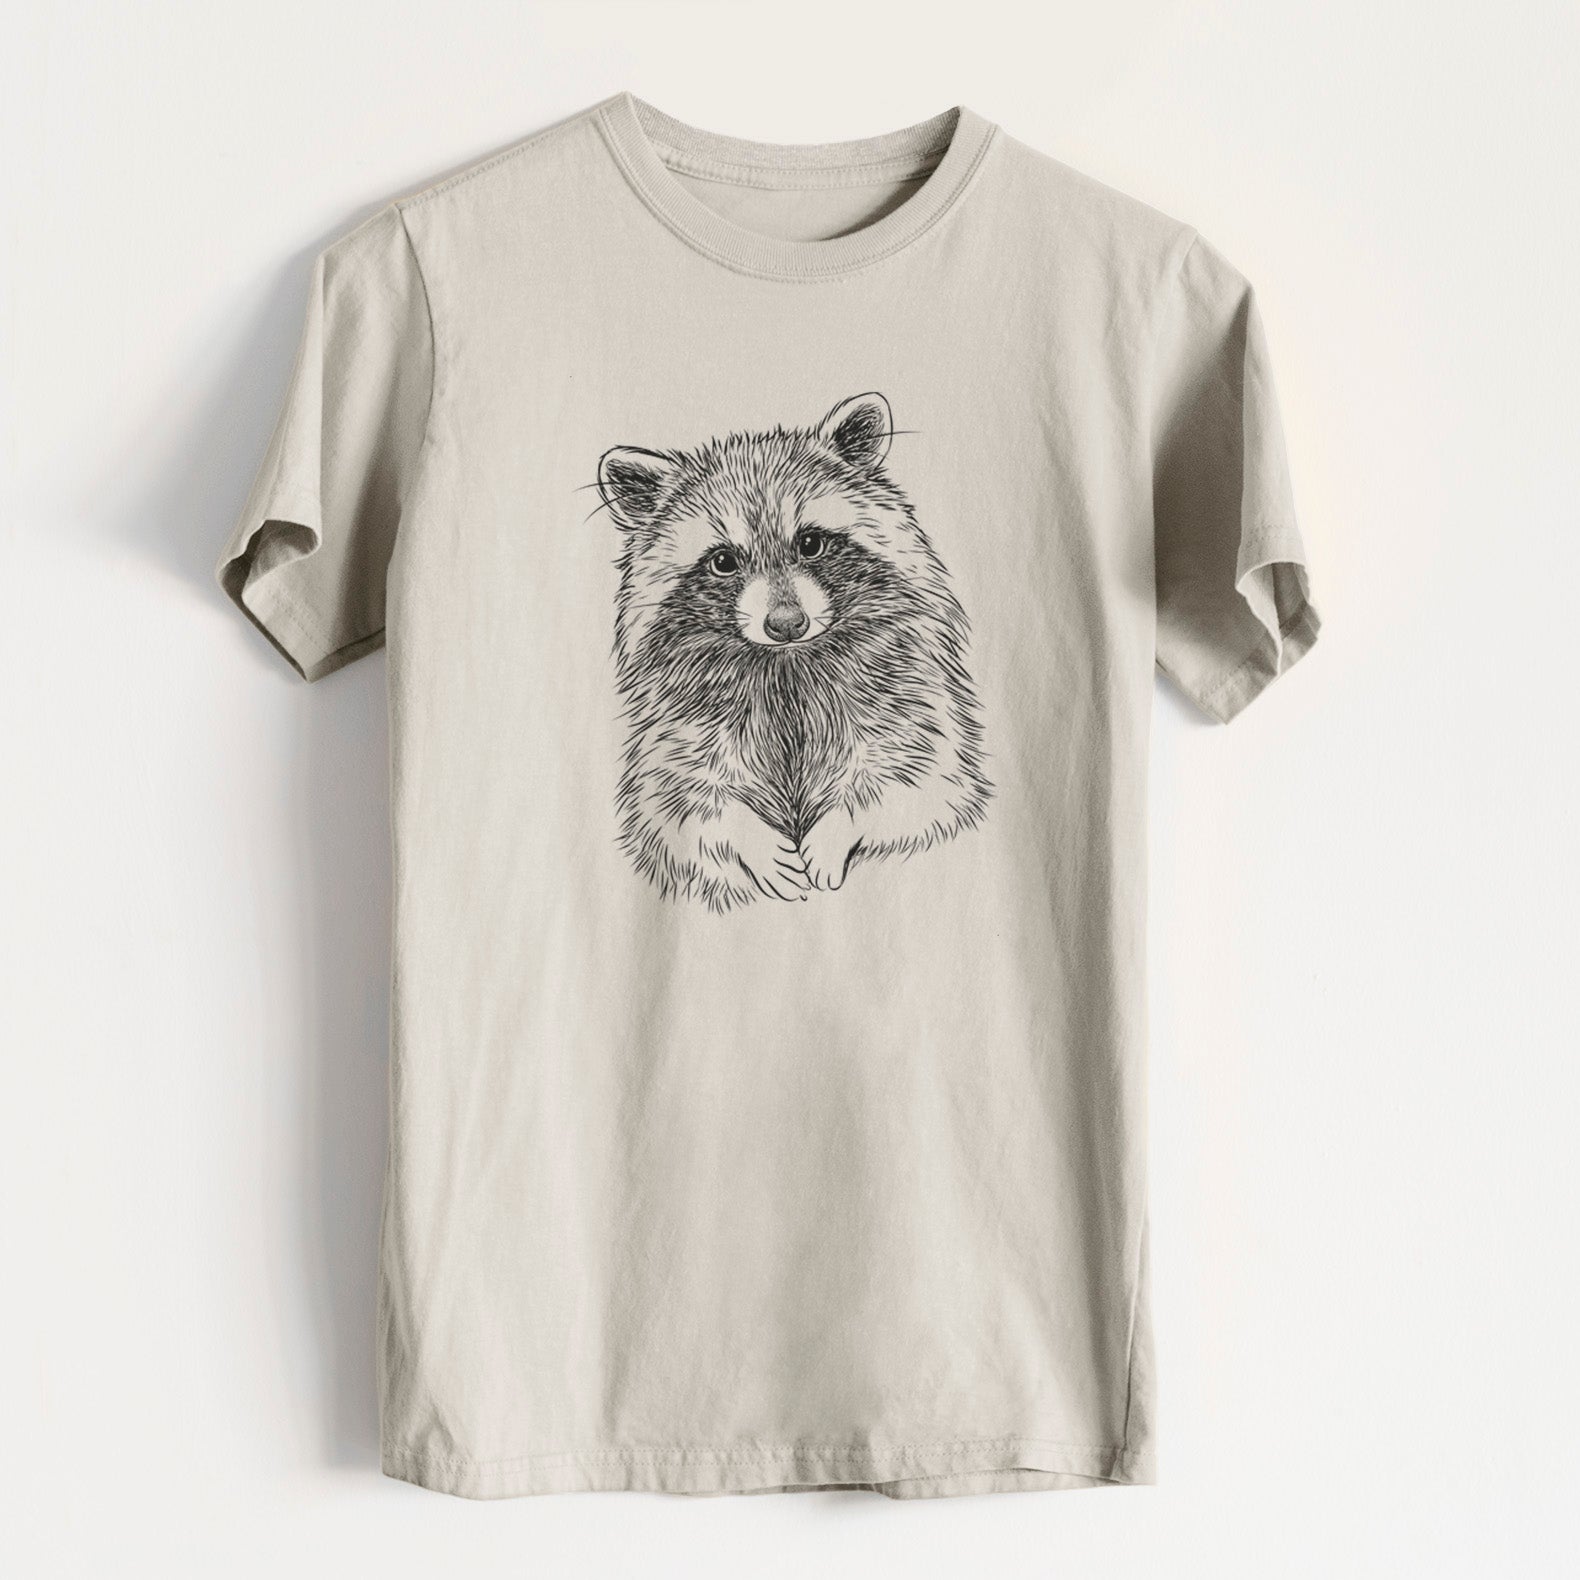 Raccoon Clothing & Gifts - Shirts, Totes & More | BeCause Tees 